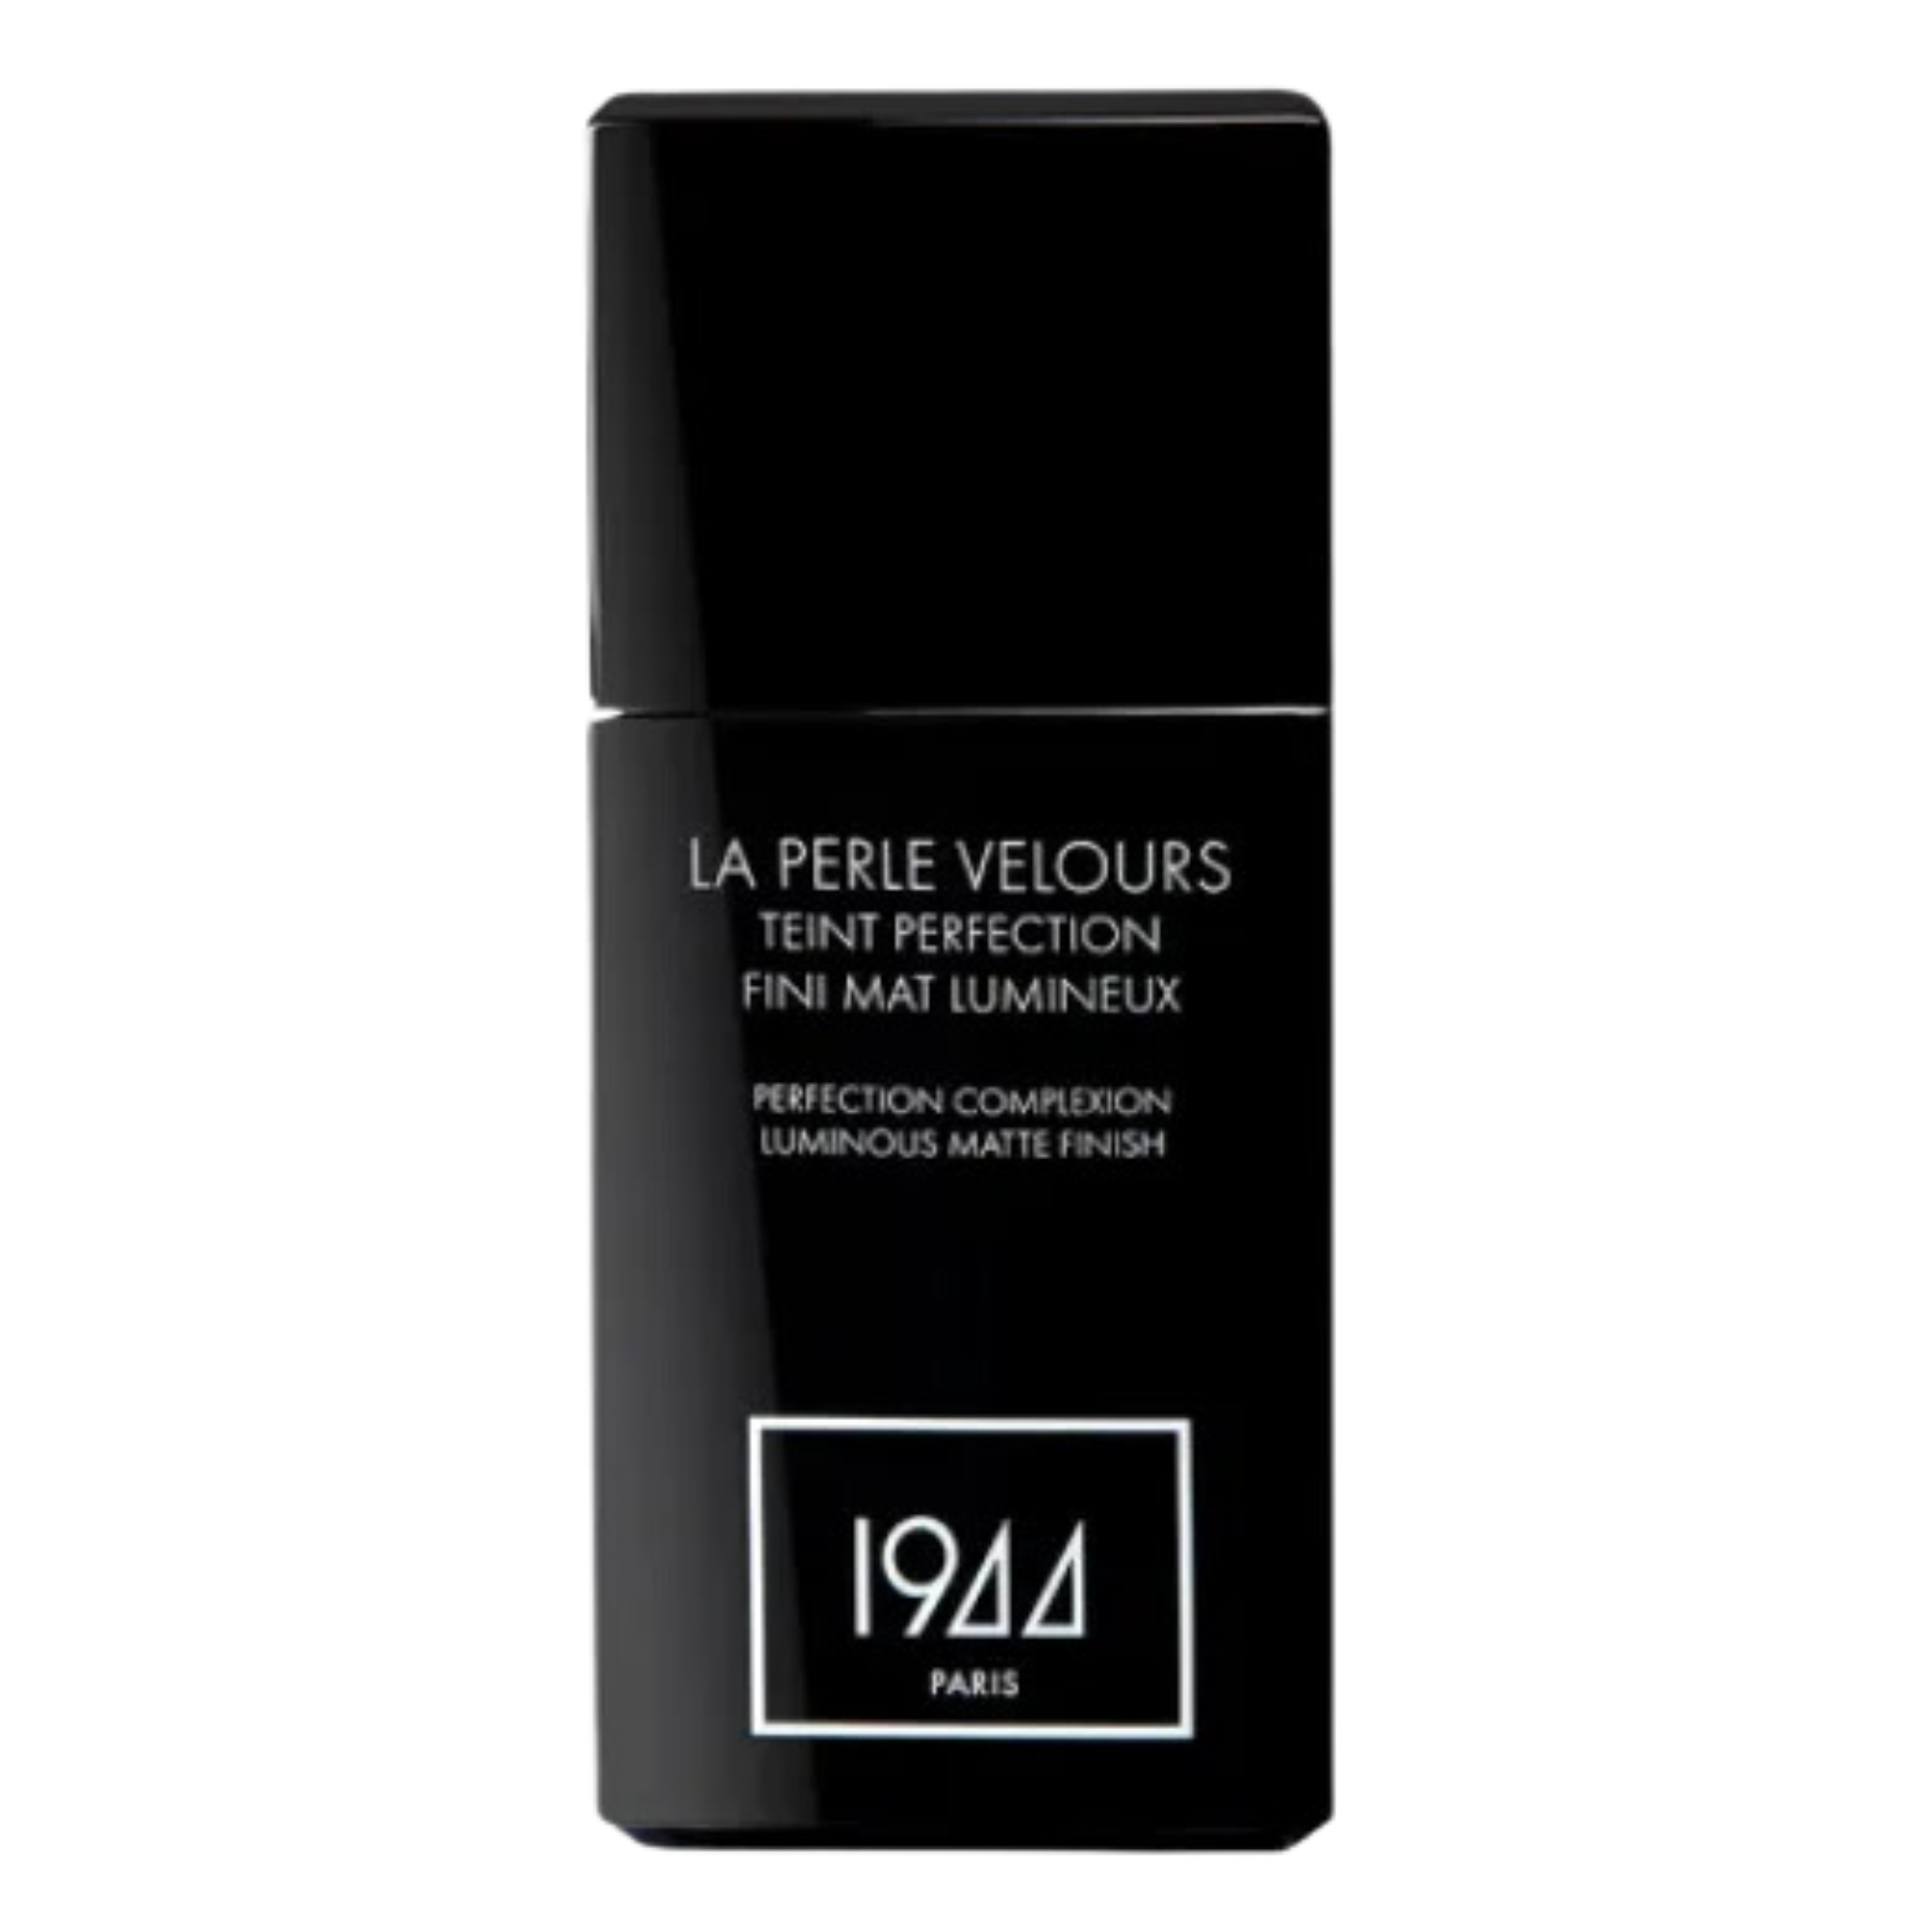 цена Тональный крем для лица ft205 соболь 1944 Paris La Perle Velours, 30 мл